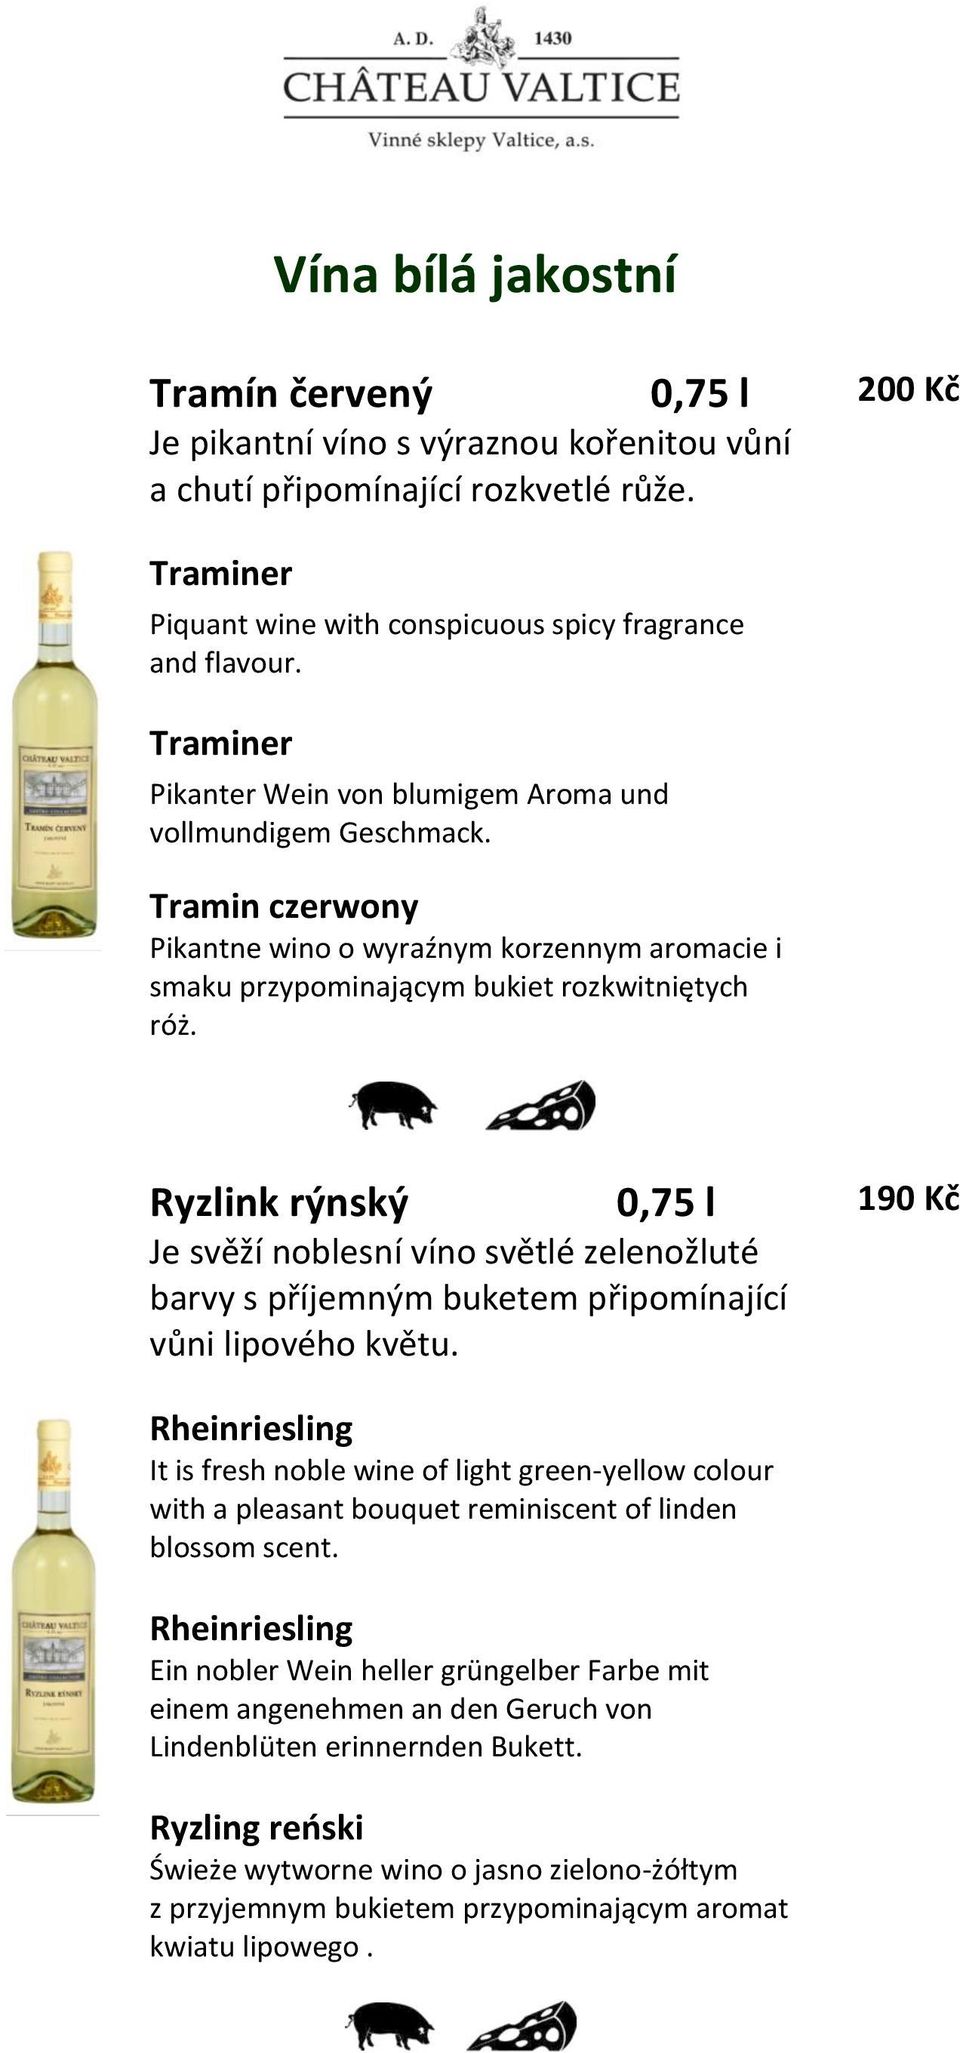 Ryzlink rýnský 190 Kč Je svěží noblesní víno světlé zelenožluté barvy s příjemným buketem připomínající vůni lipového květu.